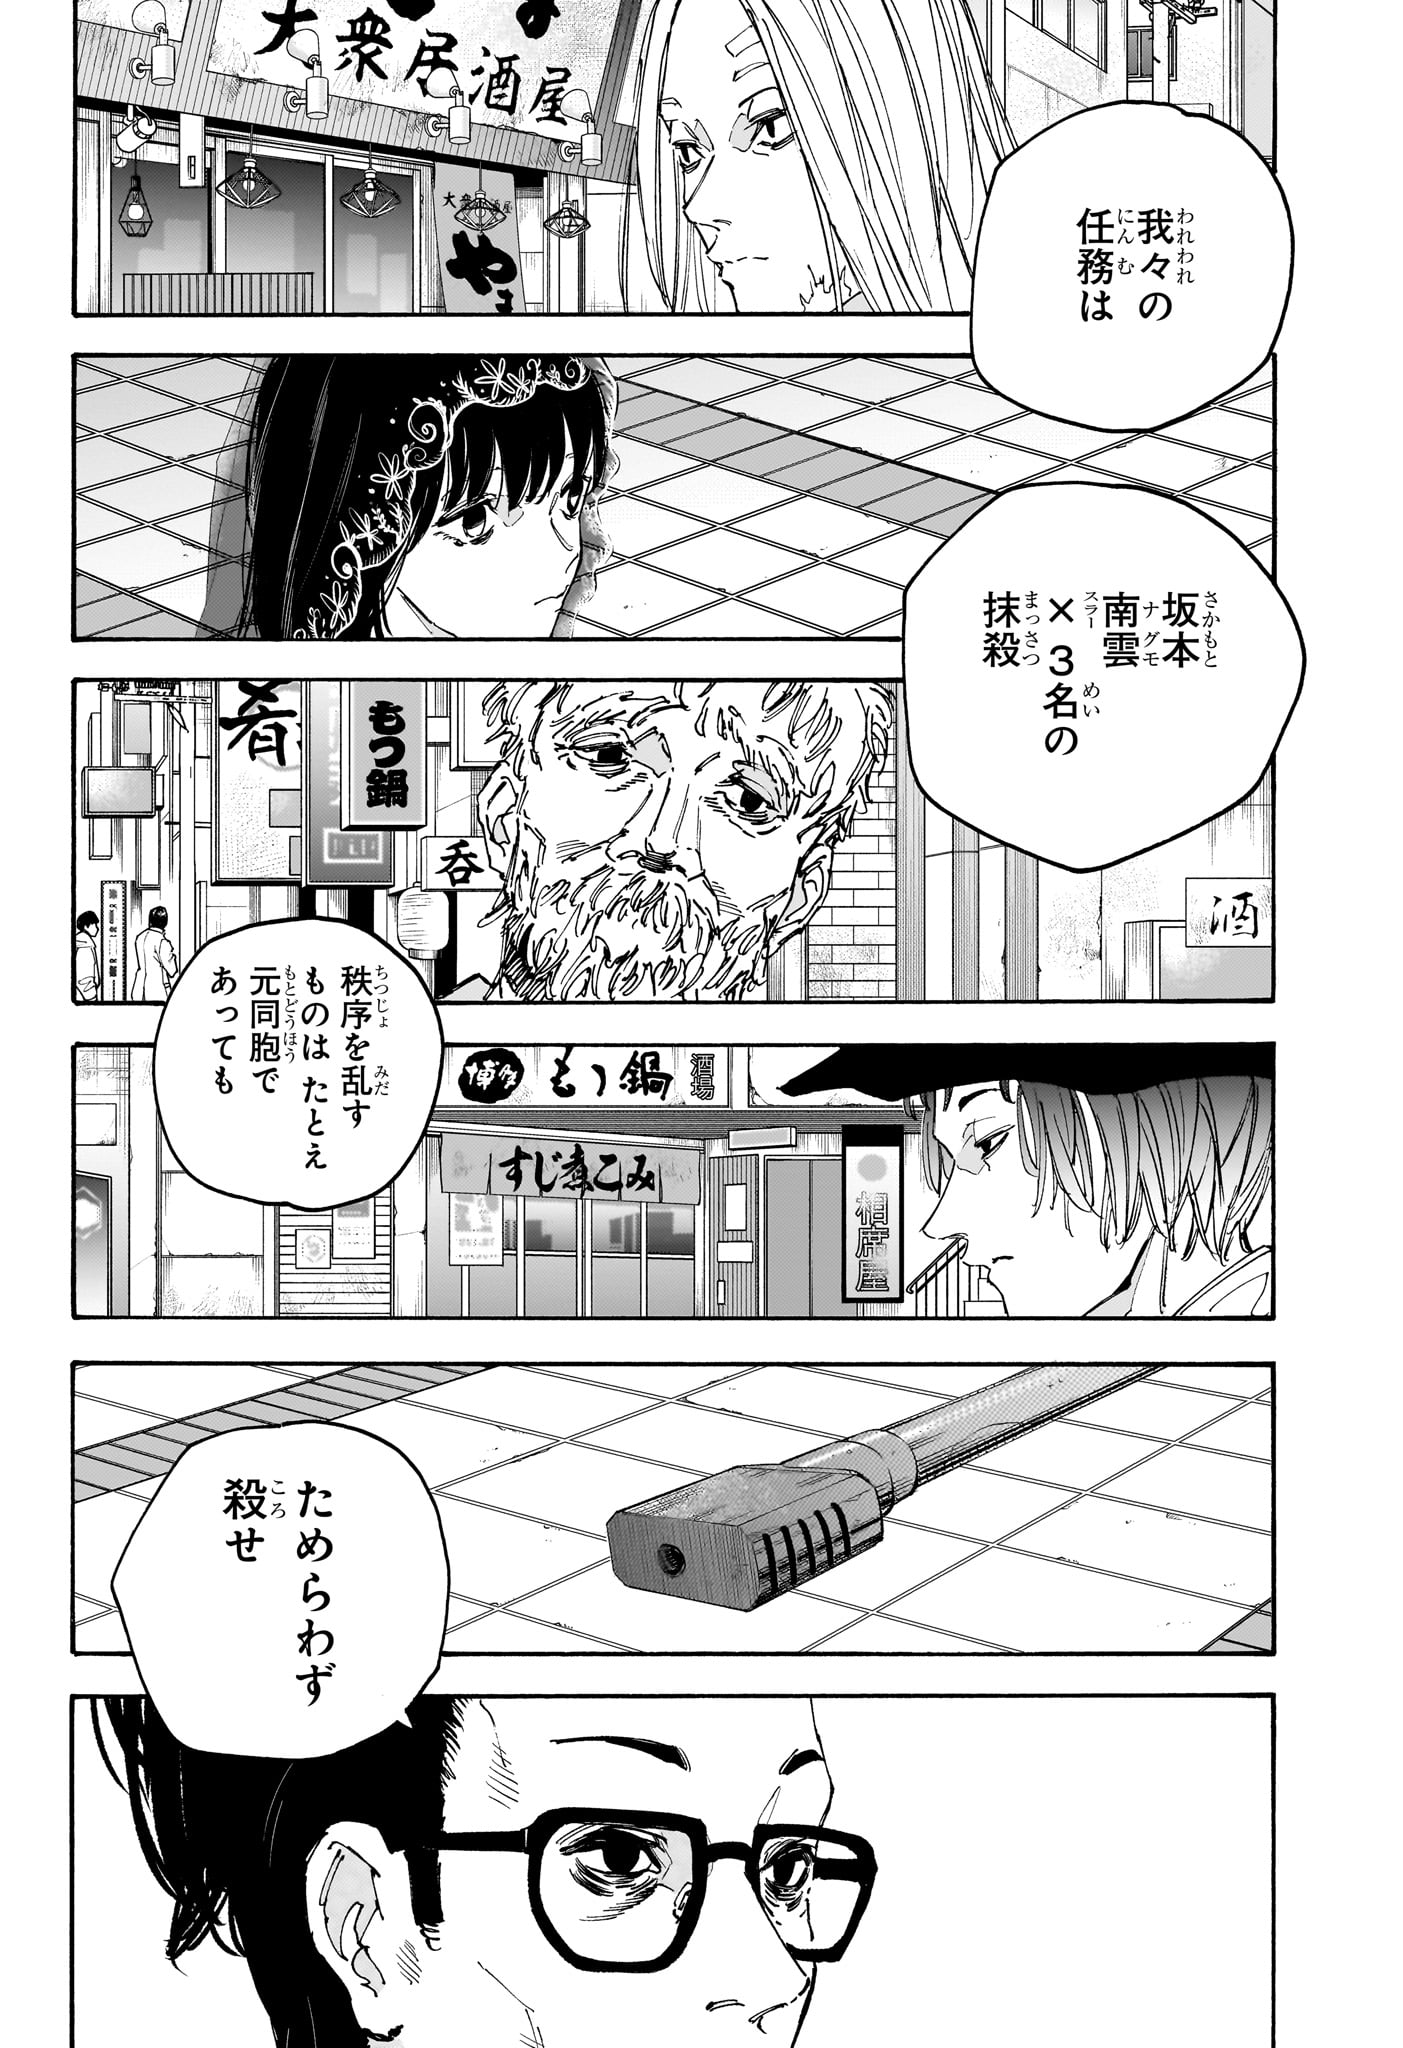 Sakamoto Days - Chapter 169 - Page 12